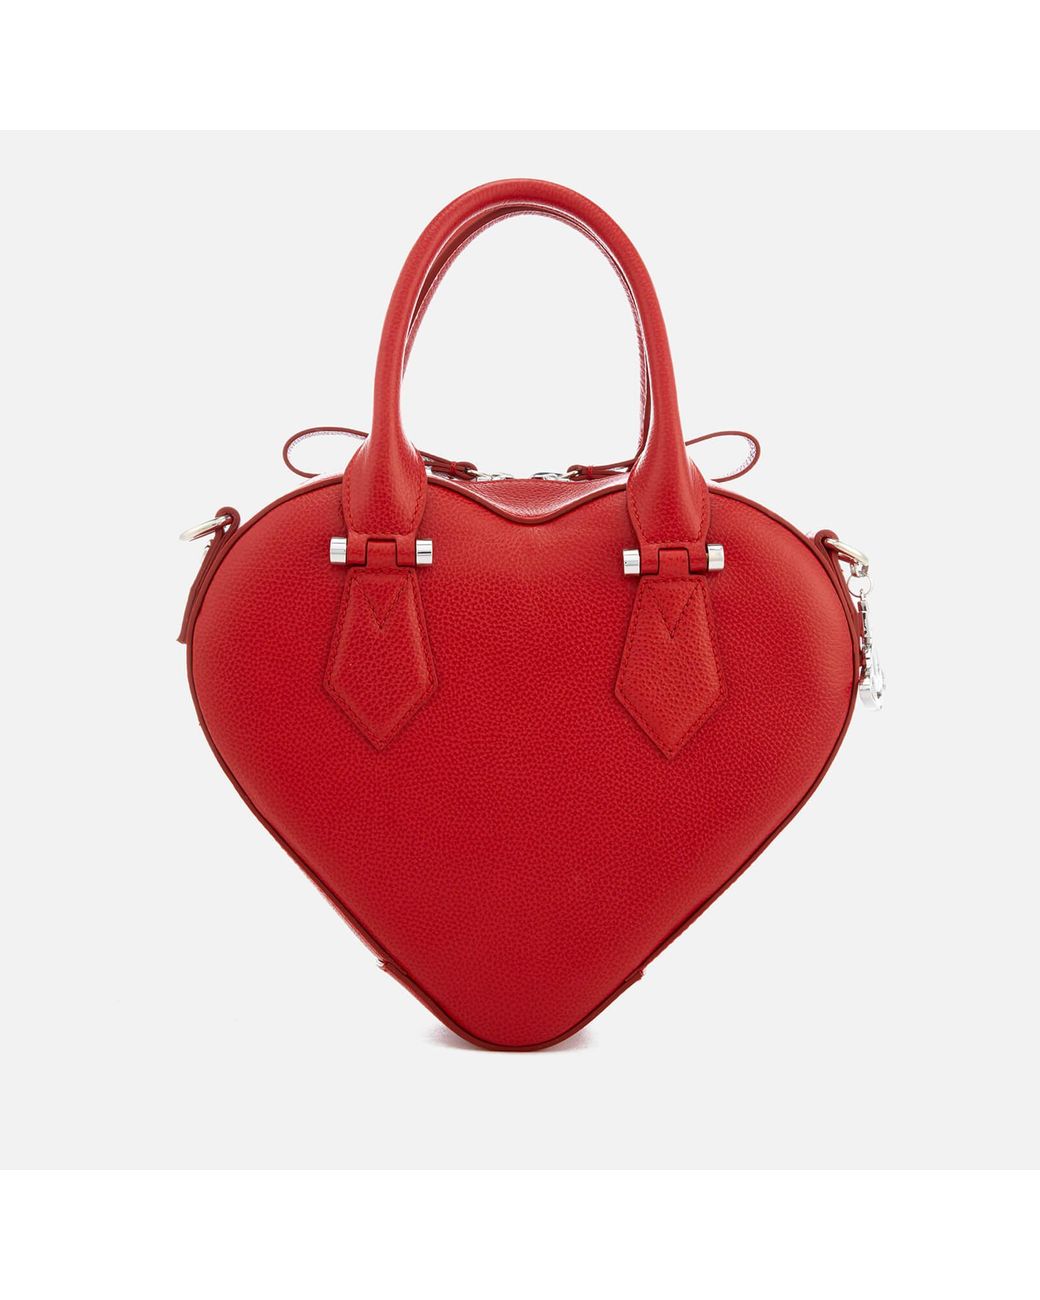 VIVIENNE WESTWOOD HEART SHOULDER BAG – Baltini